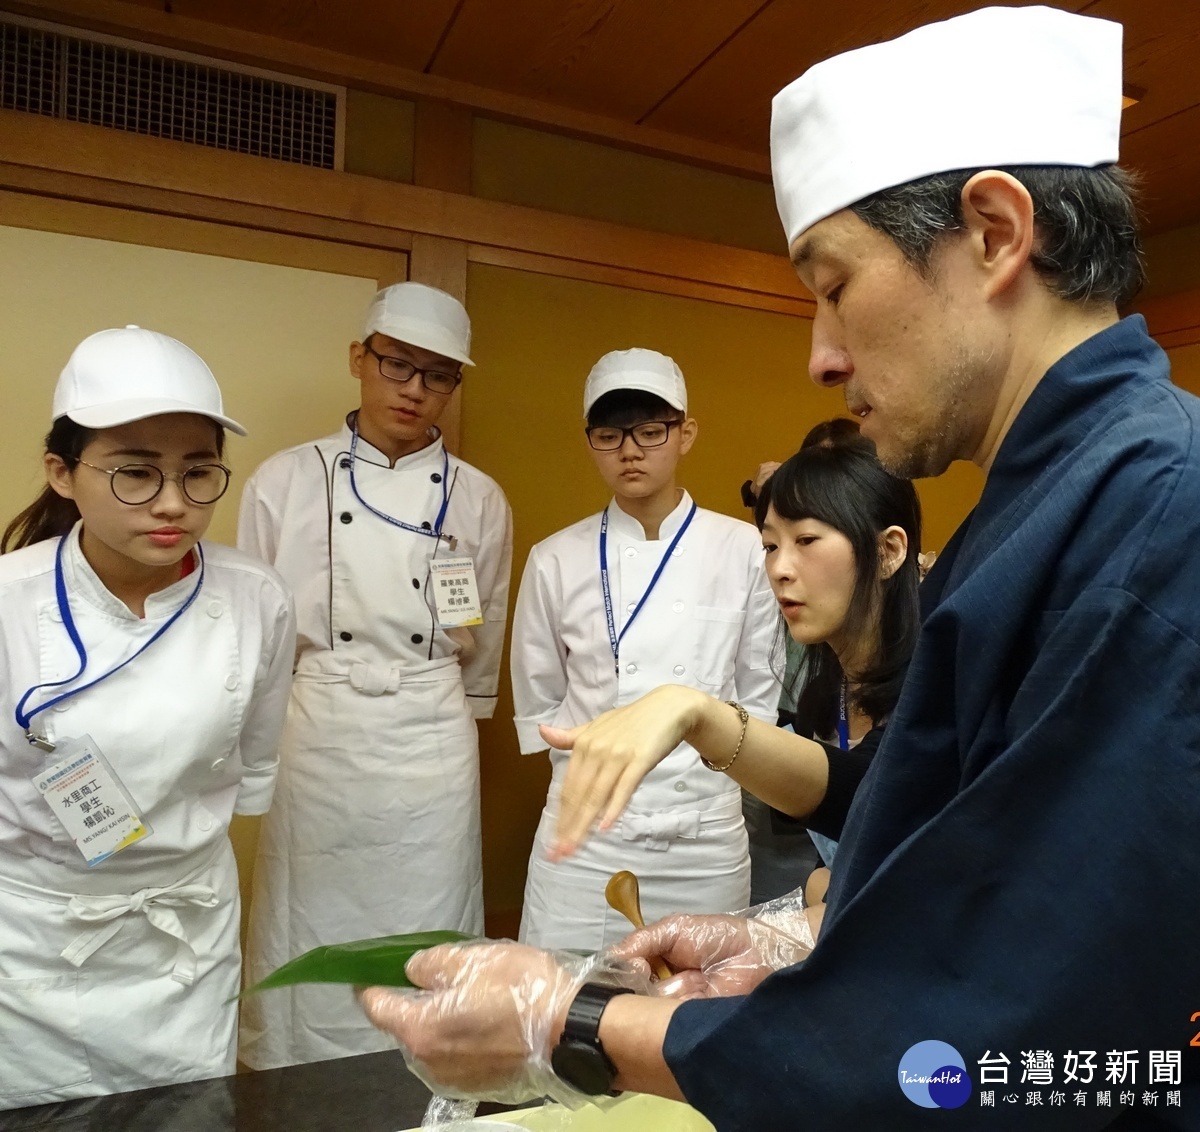 楊凱沁同學〈左1〉參加教育部商業類日本參訪團,學習日式料理日式粽子和甜點製作與松花堂定食配置(圖片/水商提供)